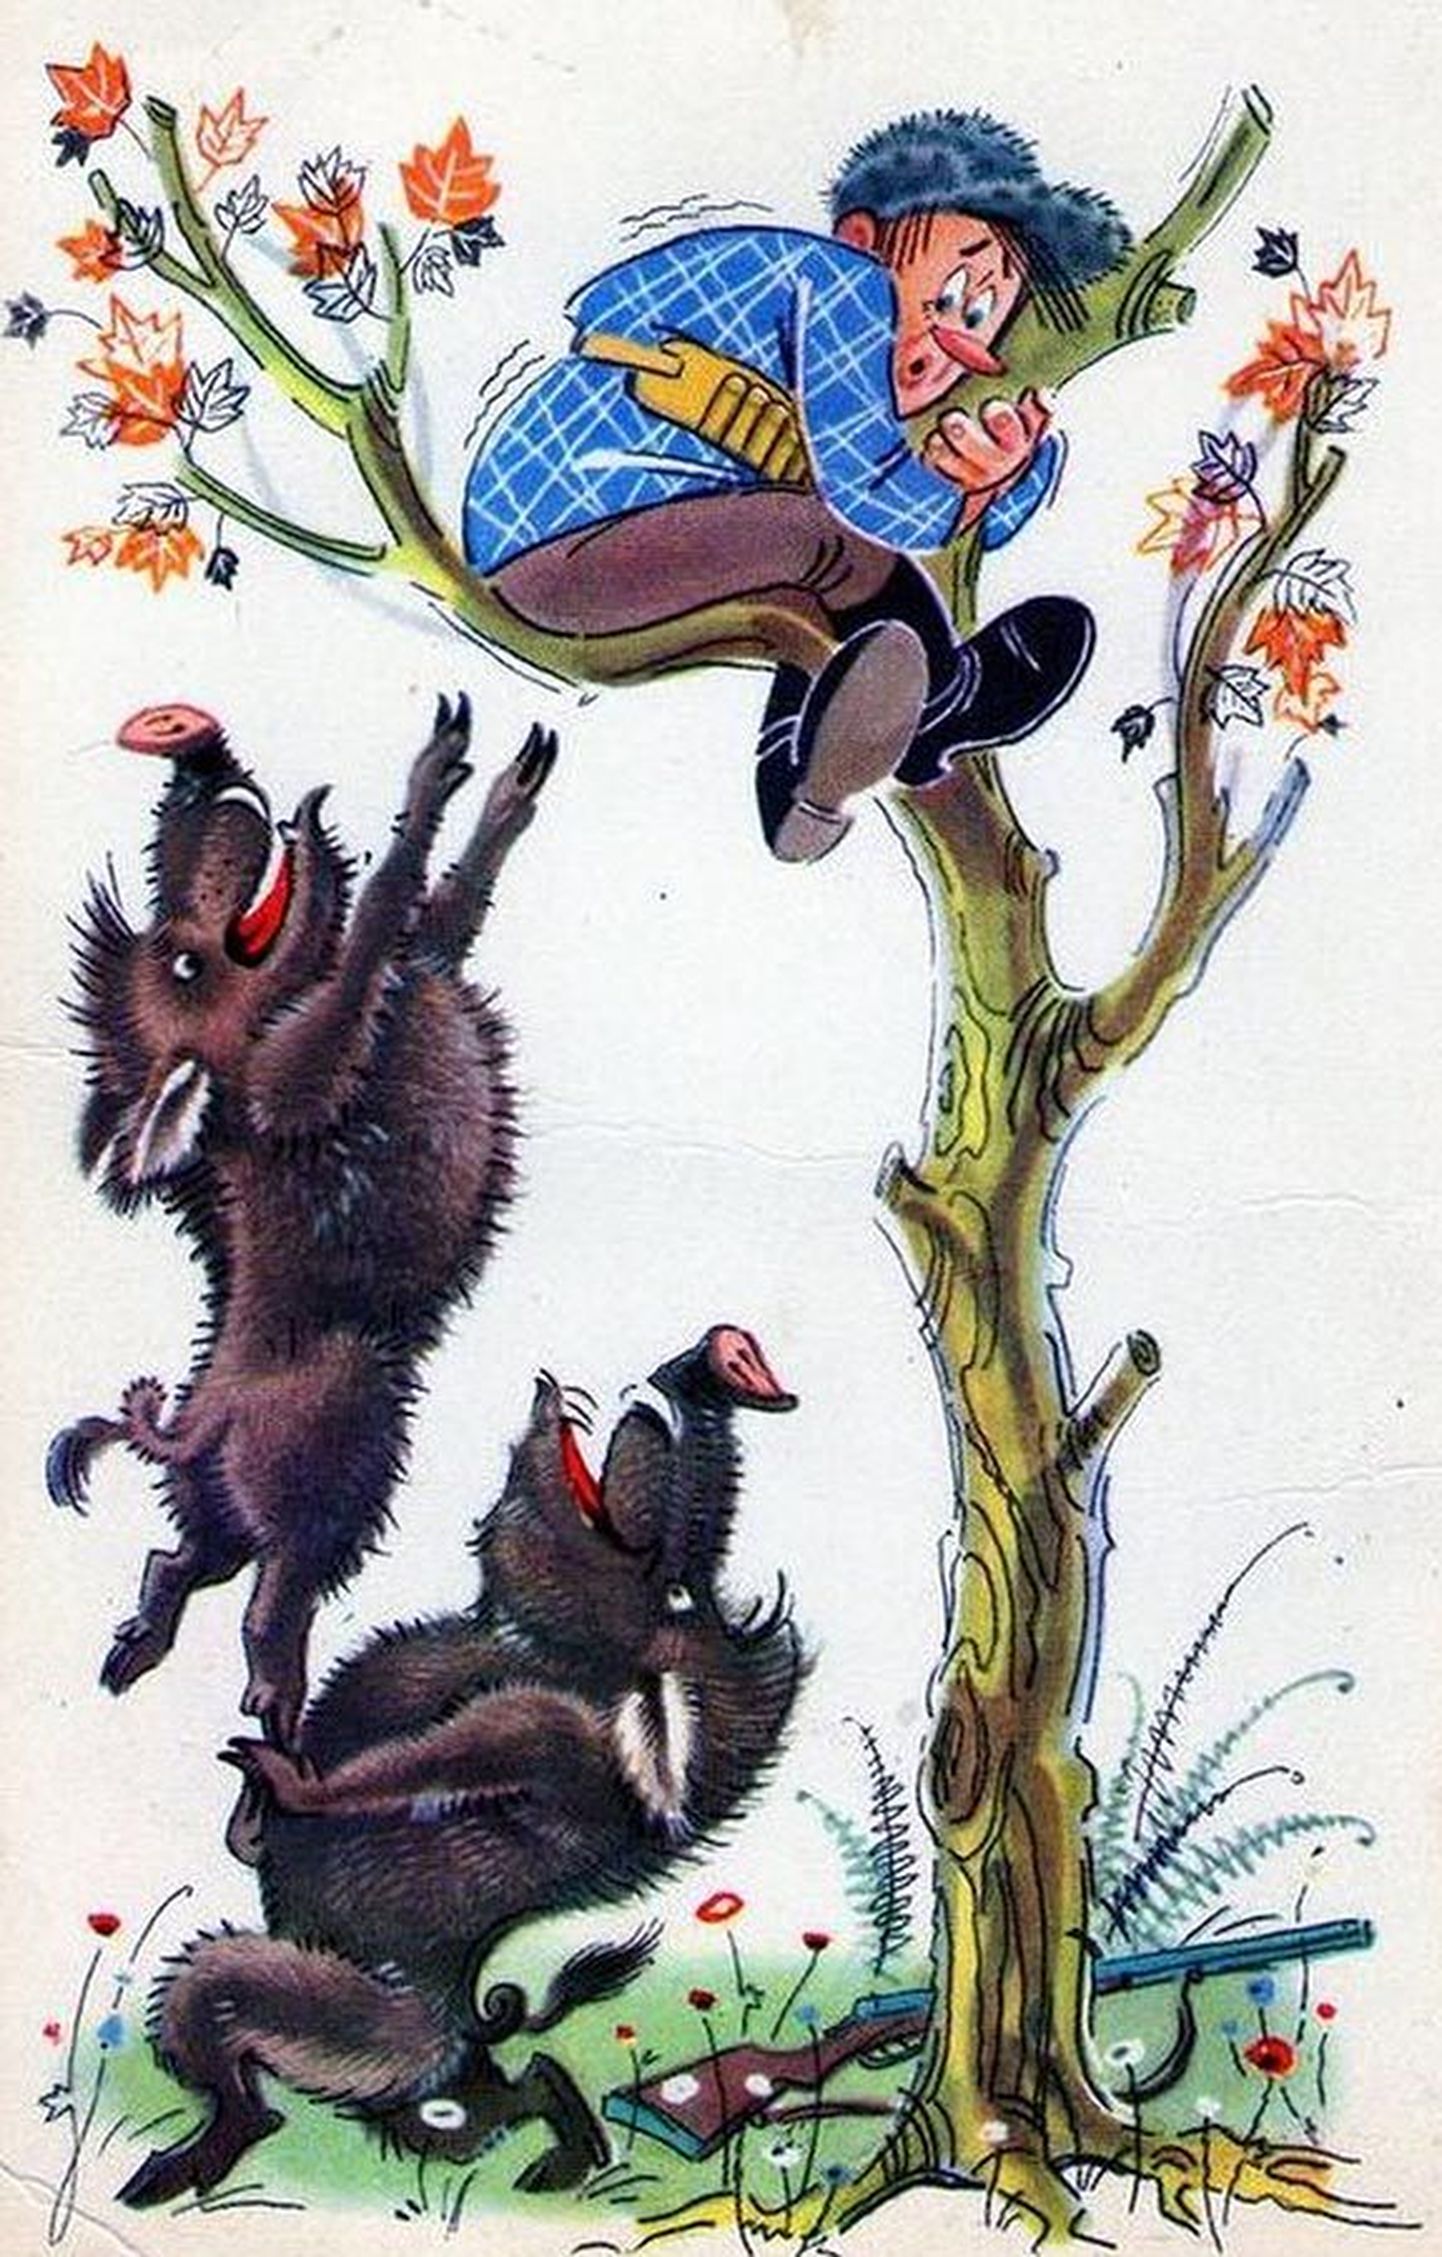 Tallinna hõberemmelga kaitsjad olid sunnitud politsei eest puu otsa põgenema. Pilt on illustreeriv.